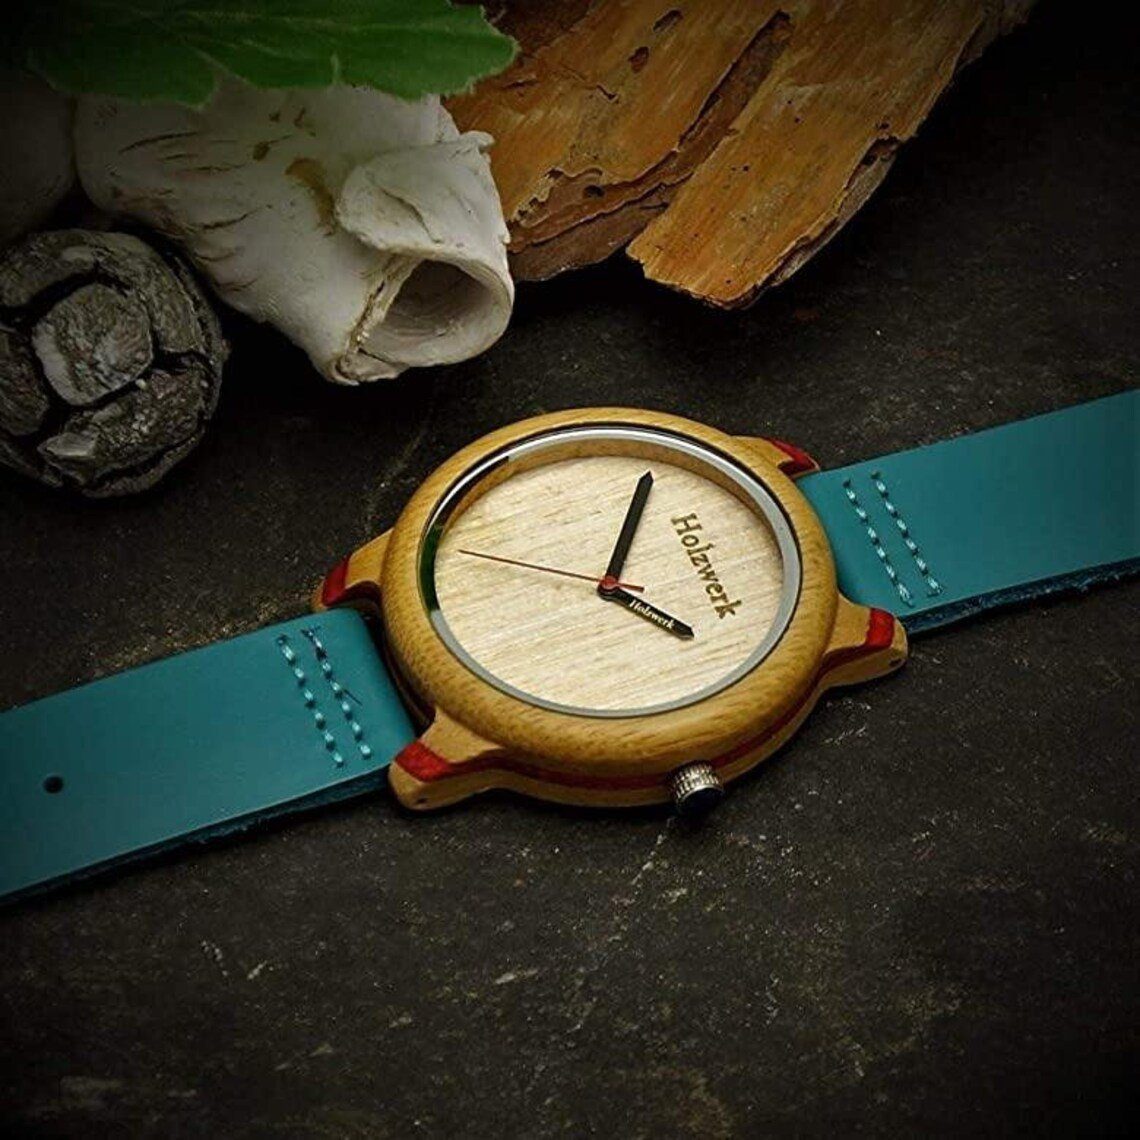 Holzwerk Quarzuhr & Damen Uhr blau Leder ELSTRA beige, in rot türkis & Holz Armband